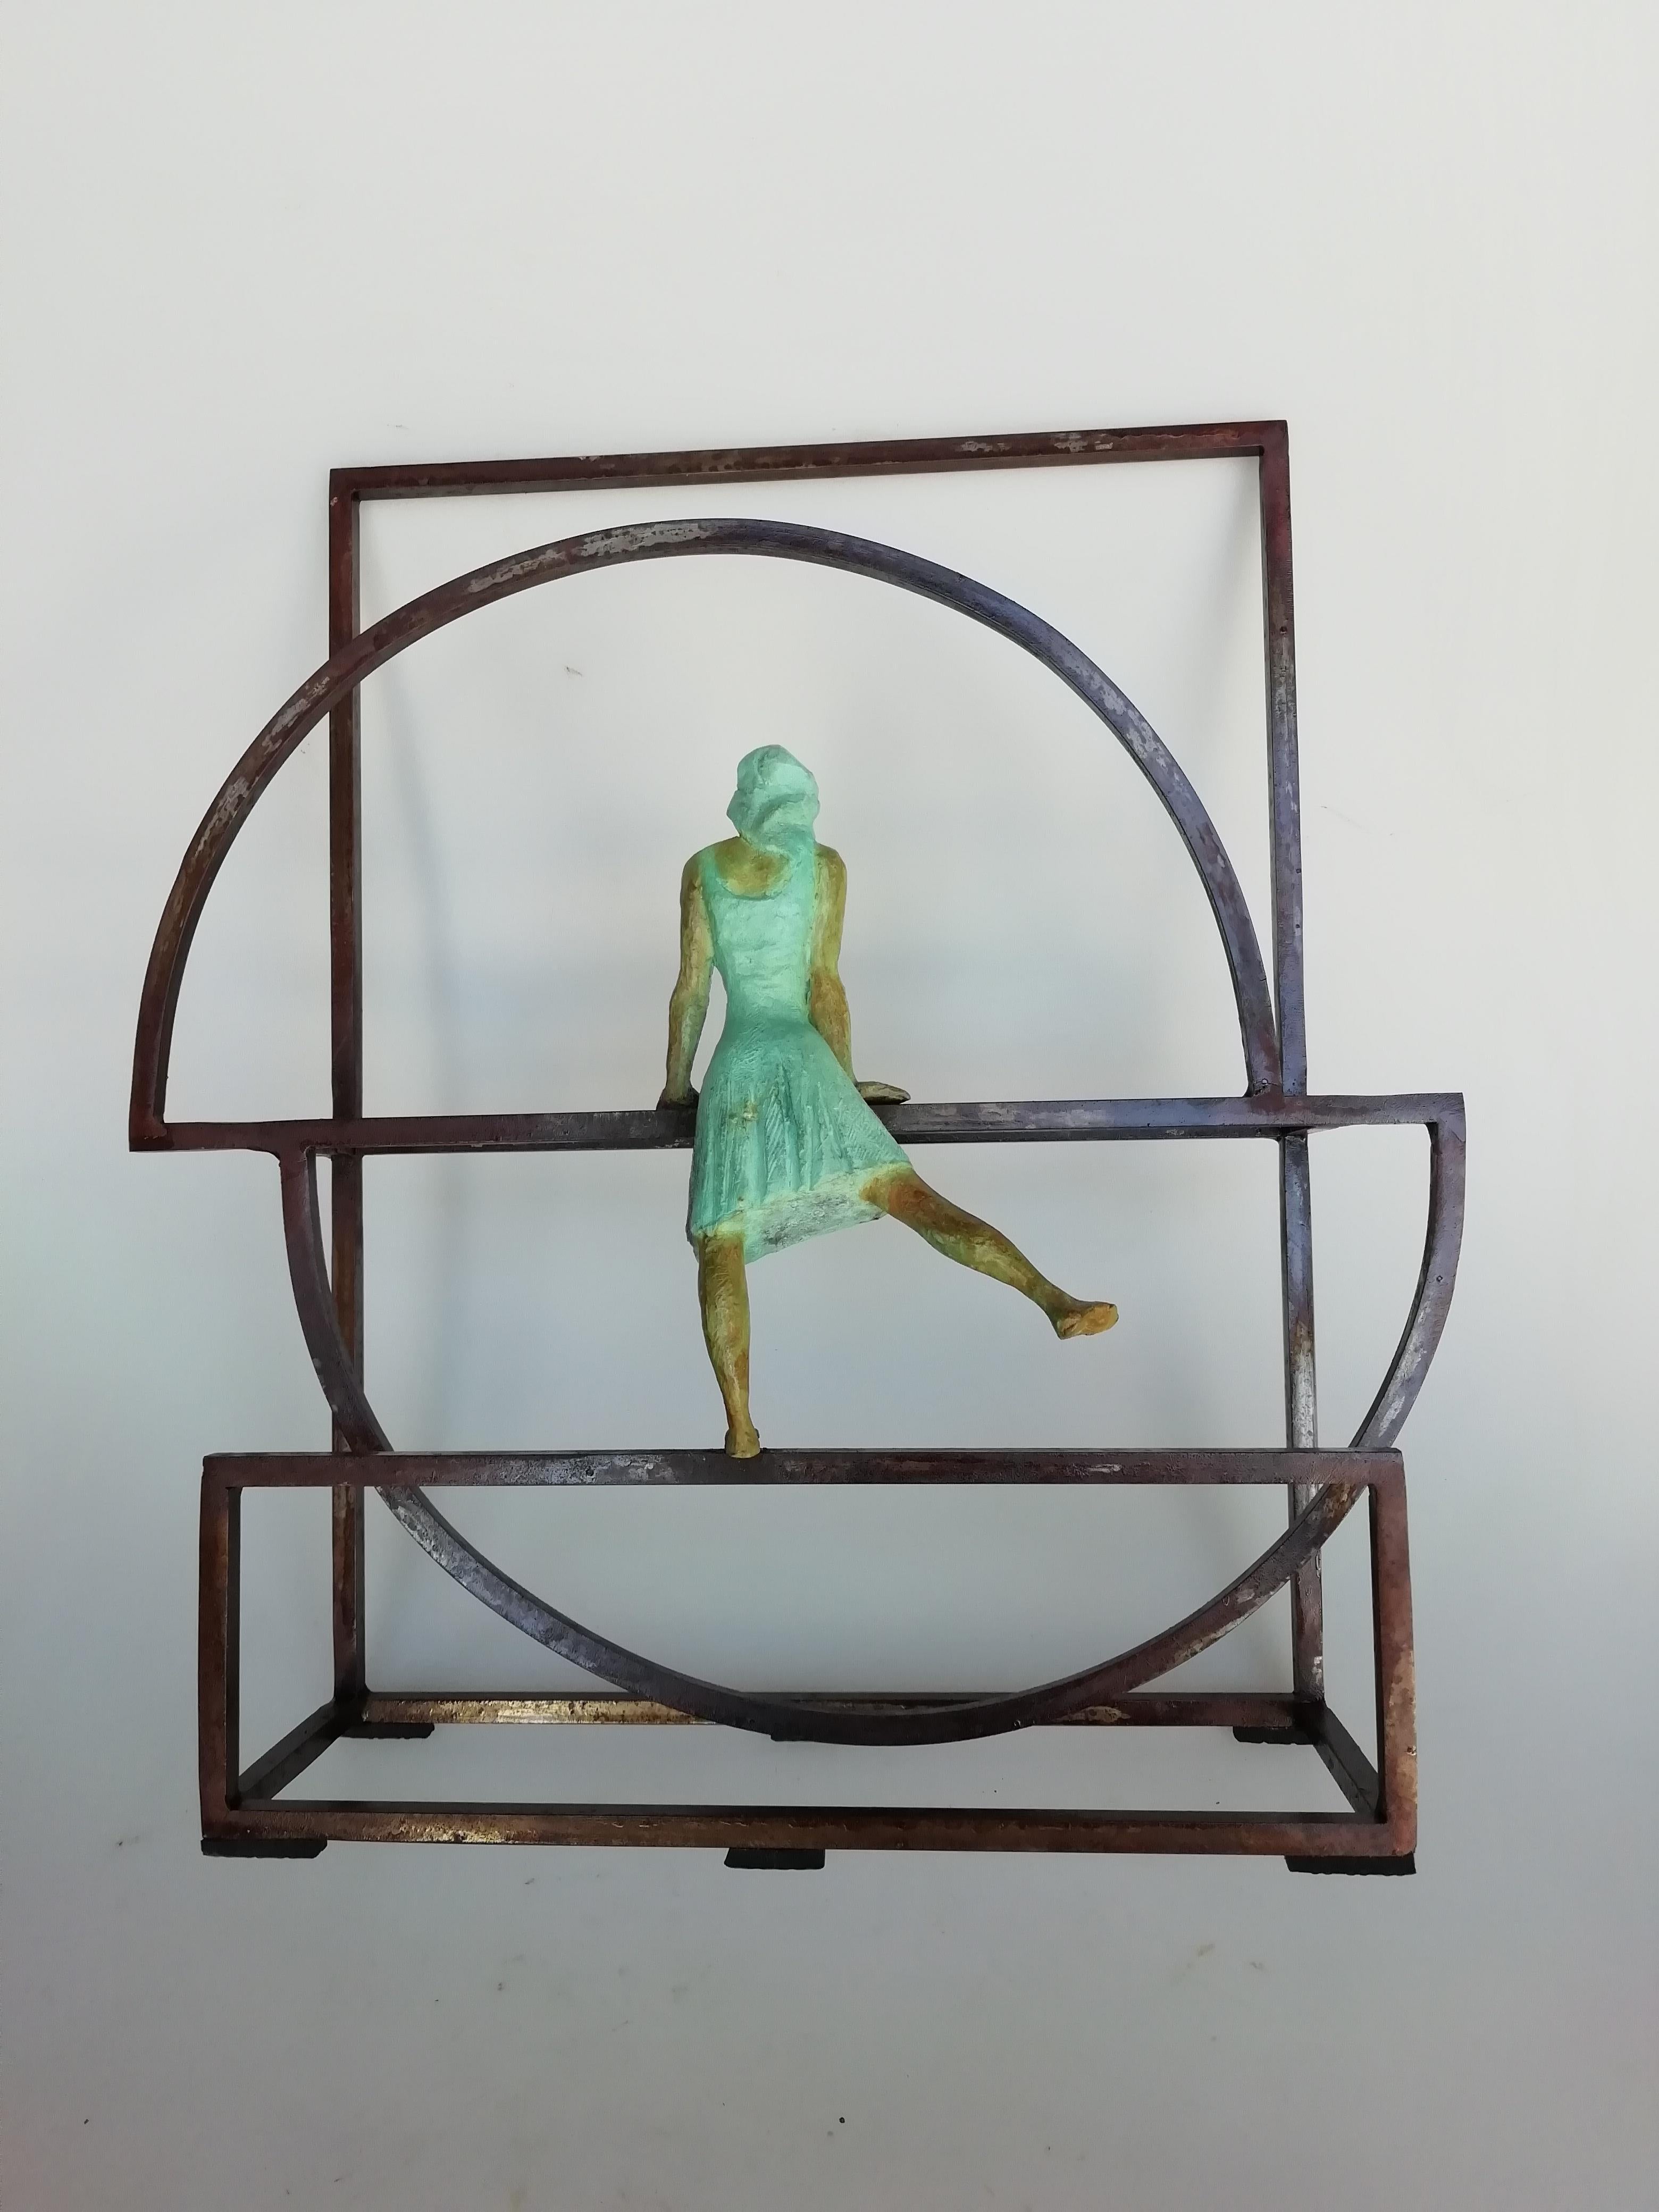 Joan Artigas Planas Figurative Sculpture - "Rosette" contemporary bronze table, mural sculpture figurative girl freedom